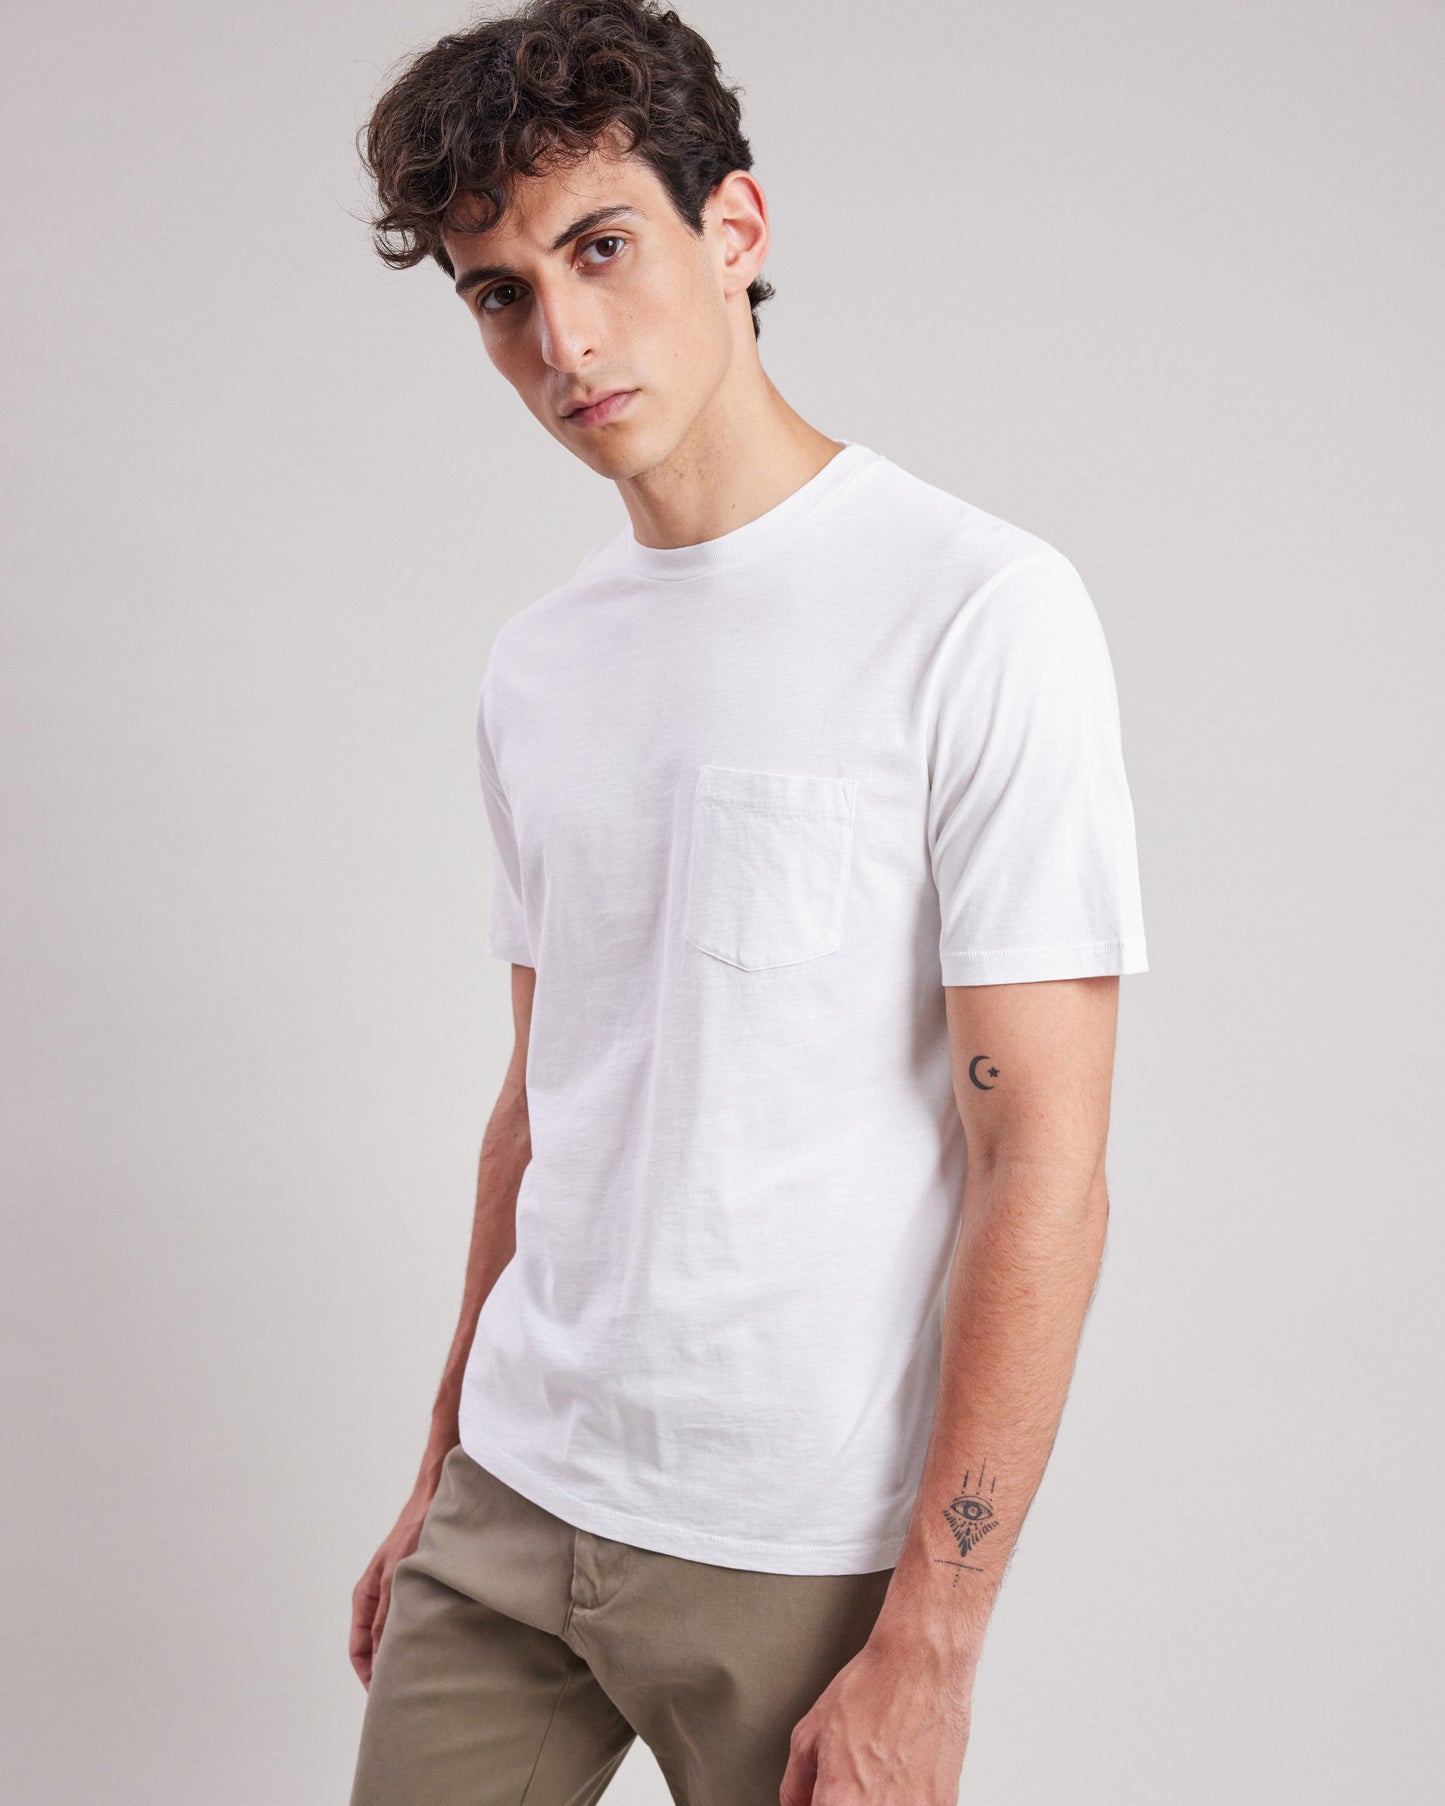 Tee shirt Homme en coton slub Blanc Pocket BC64302-01